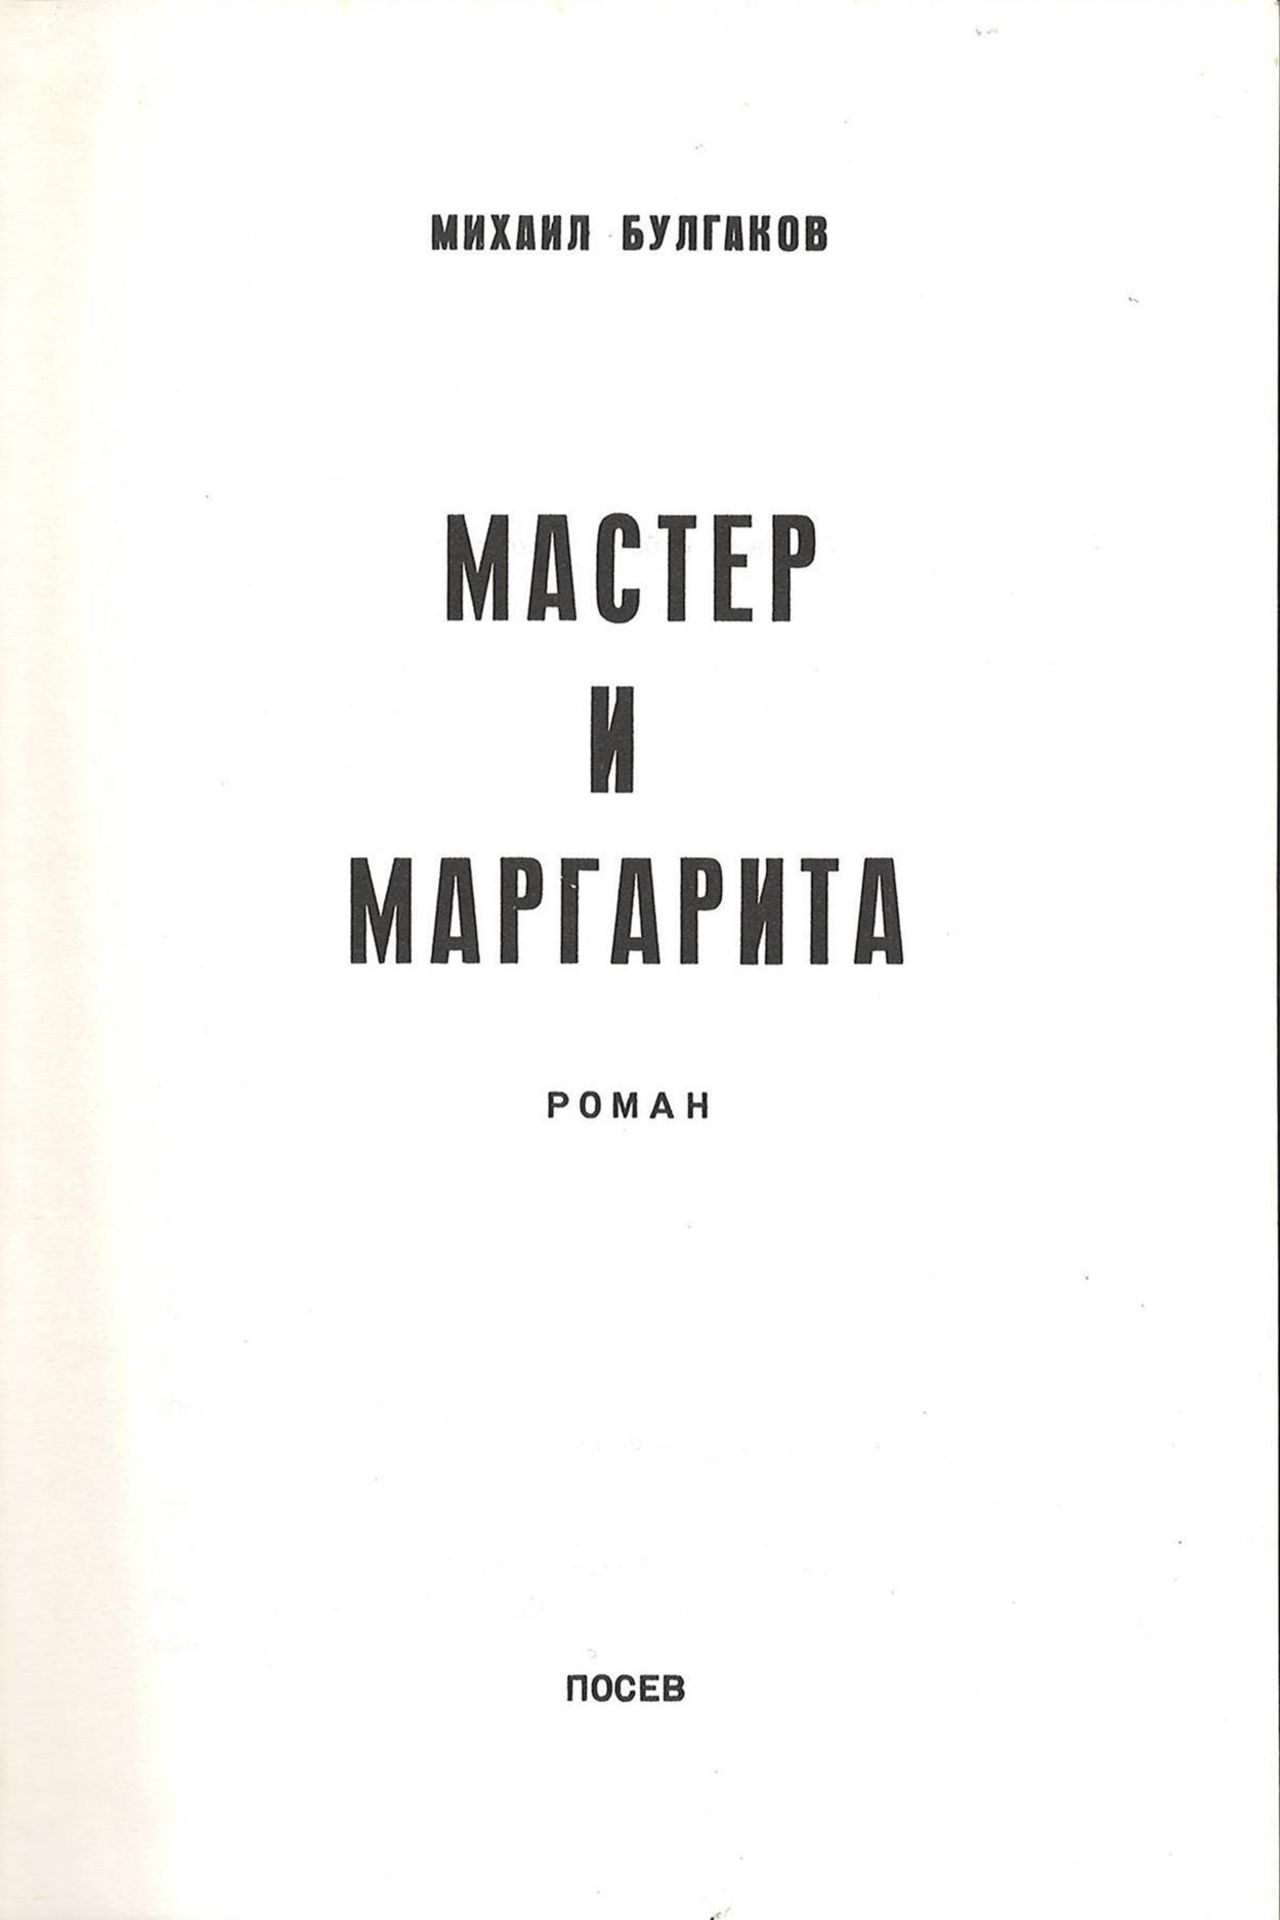 Bulgakov, M. The Master and Margarita: Novel / Mikhail Bulgakov; Illustrated cover by R.M. - 2d - Bild 2 aus 3